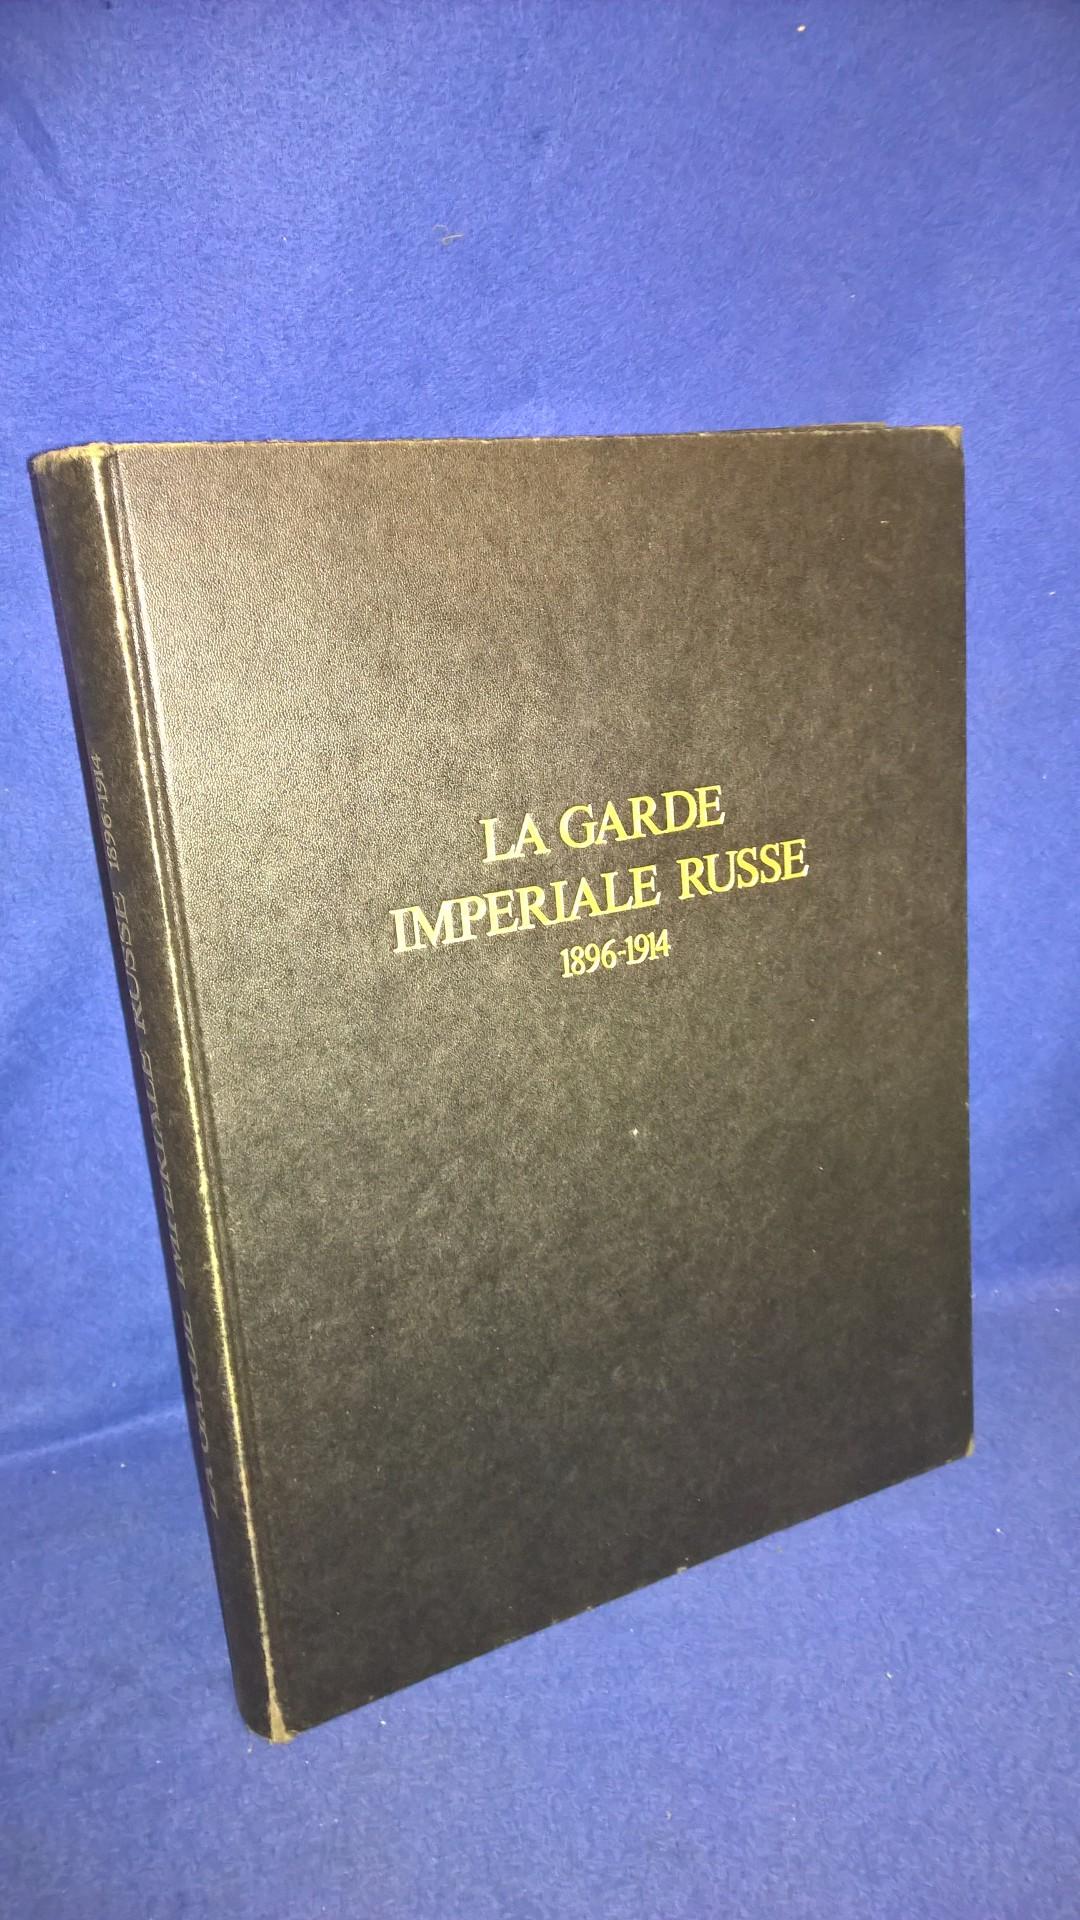 La Garde Imperiale Russe 1896-1914. Beschreibung der verschiedenen russischen, kaiserlichen Garderegimenter in französischer Textsprache.